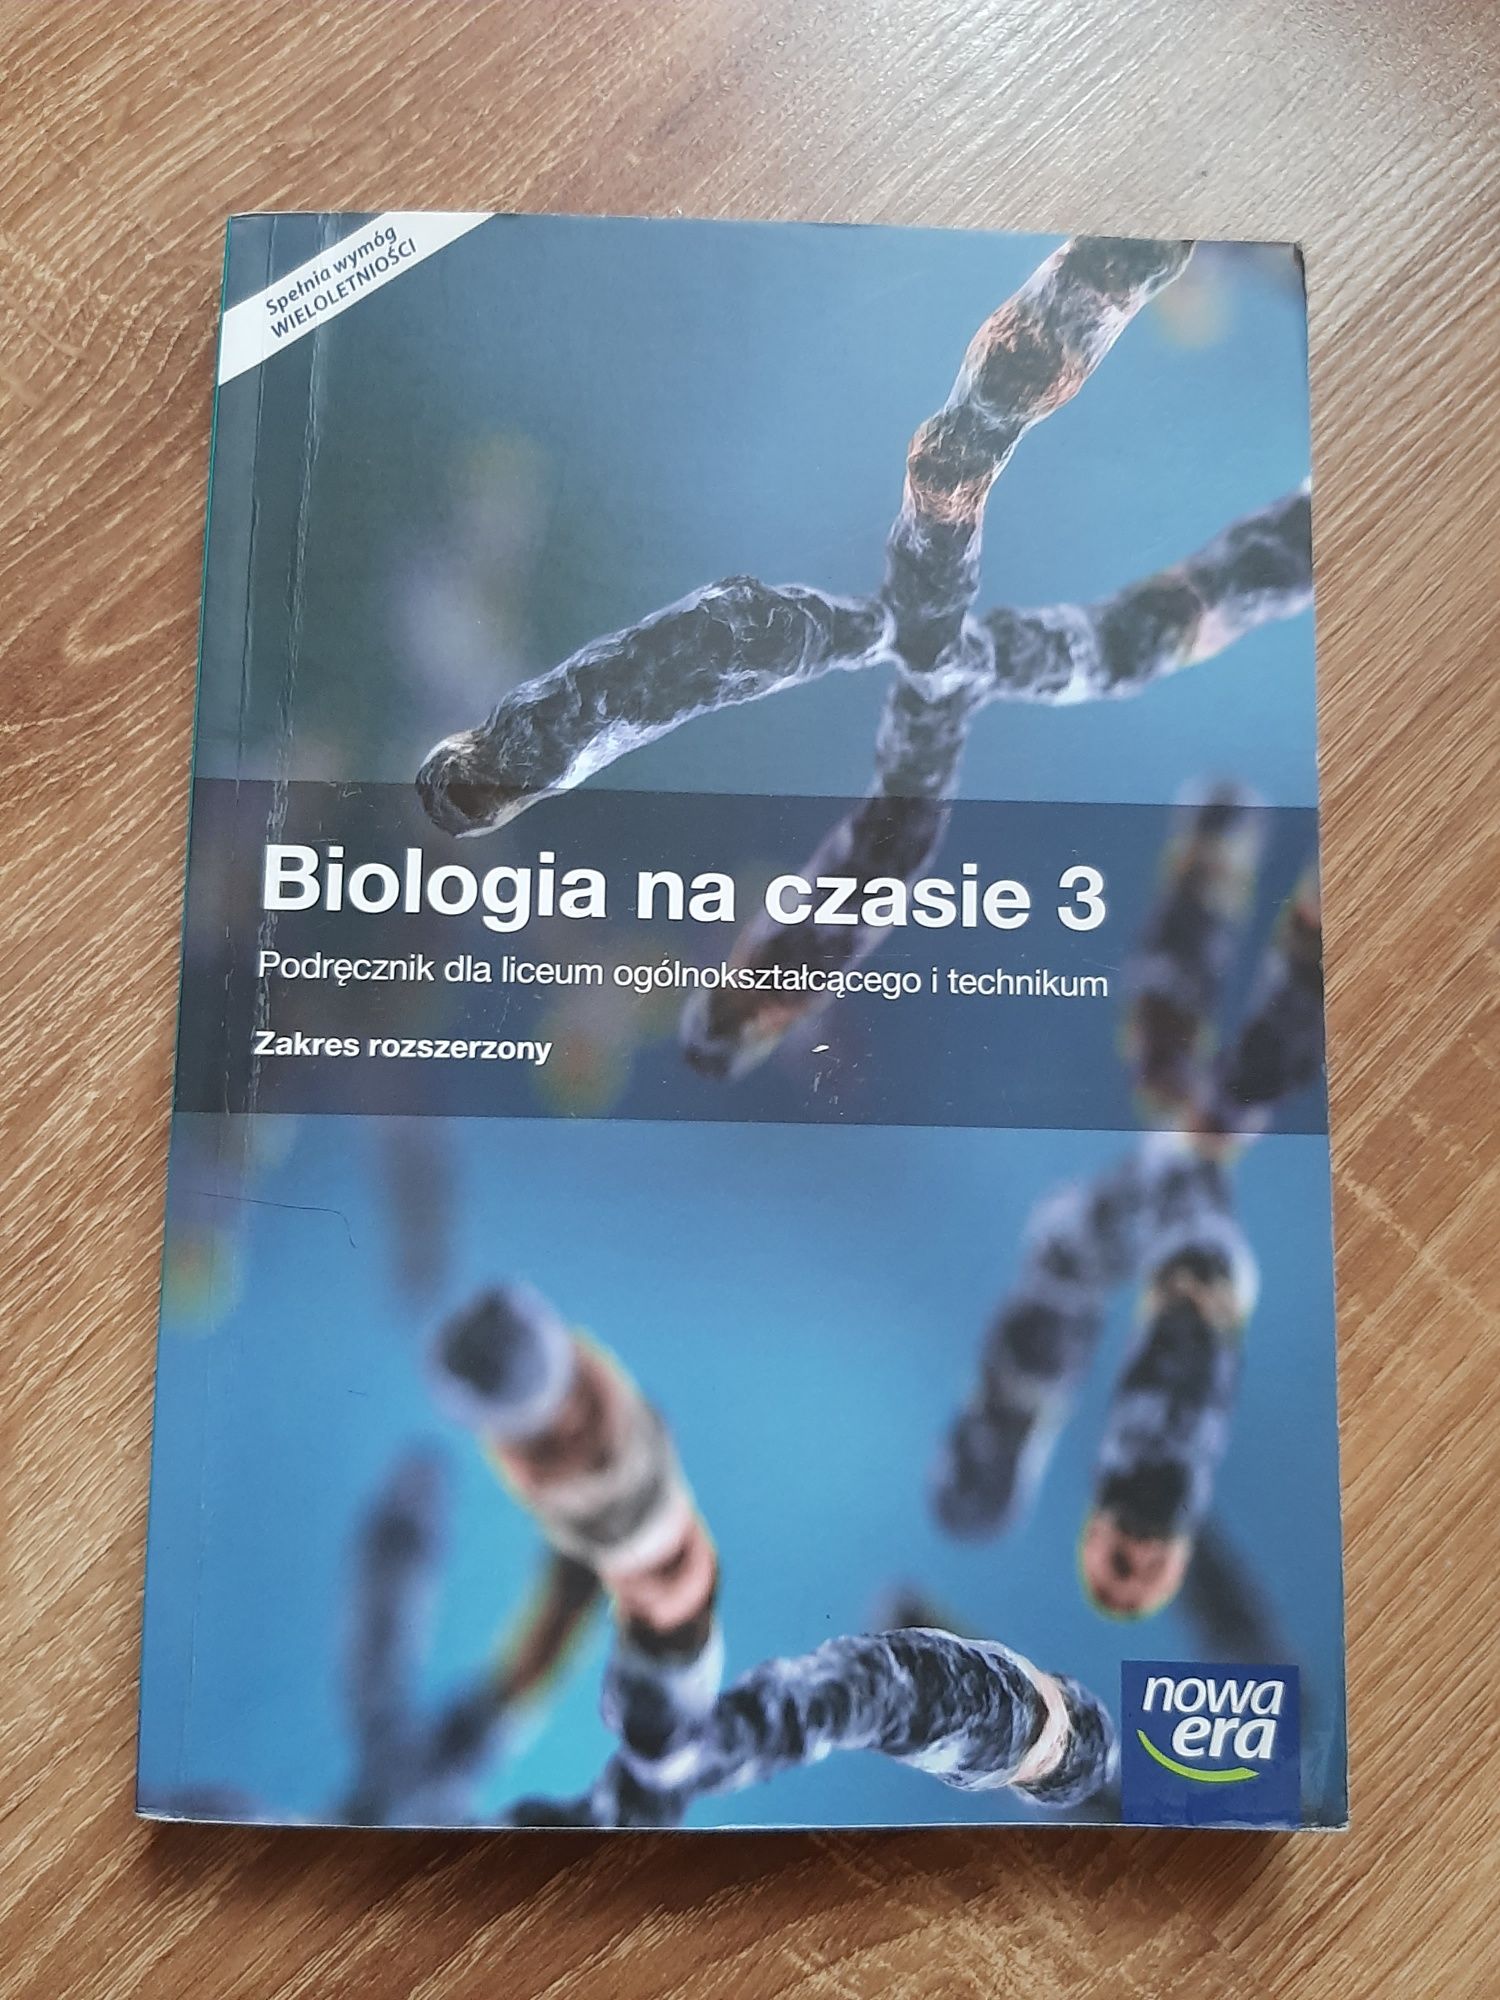 Książka do biologi "Biologia na czasie 3"